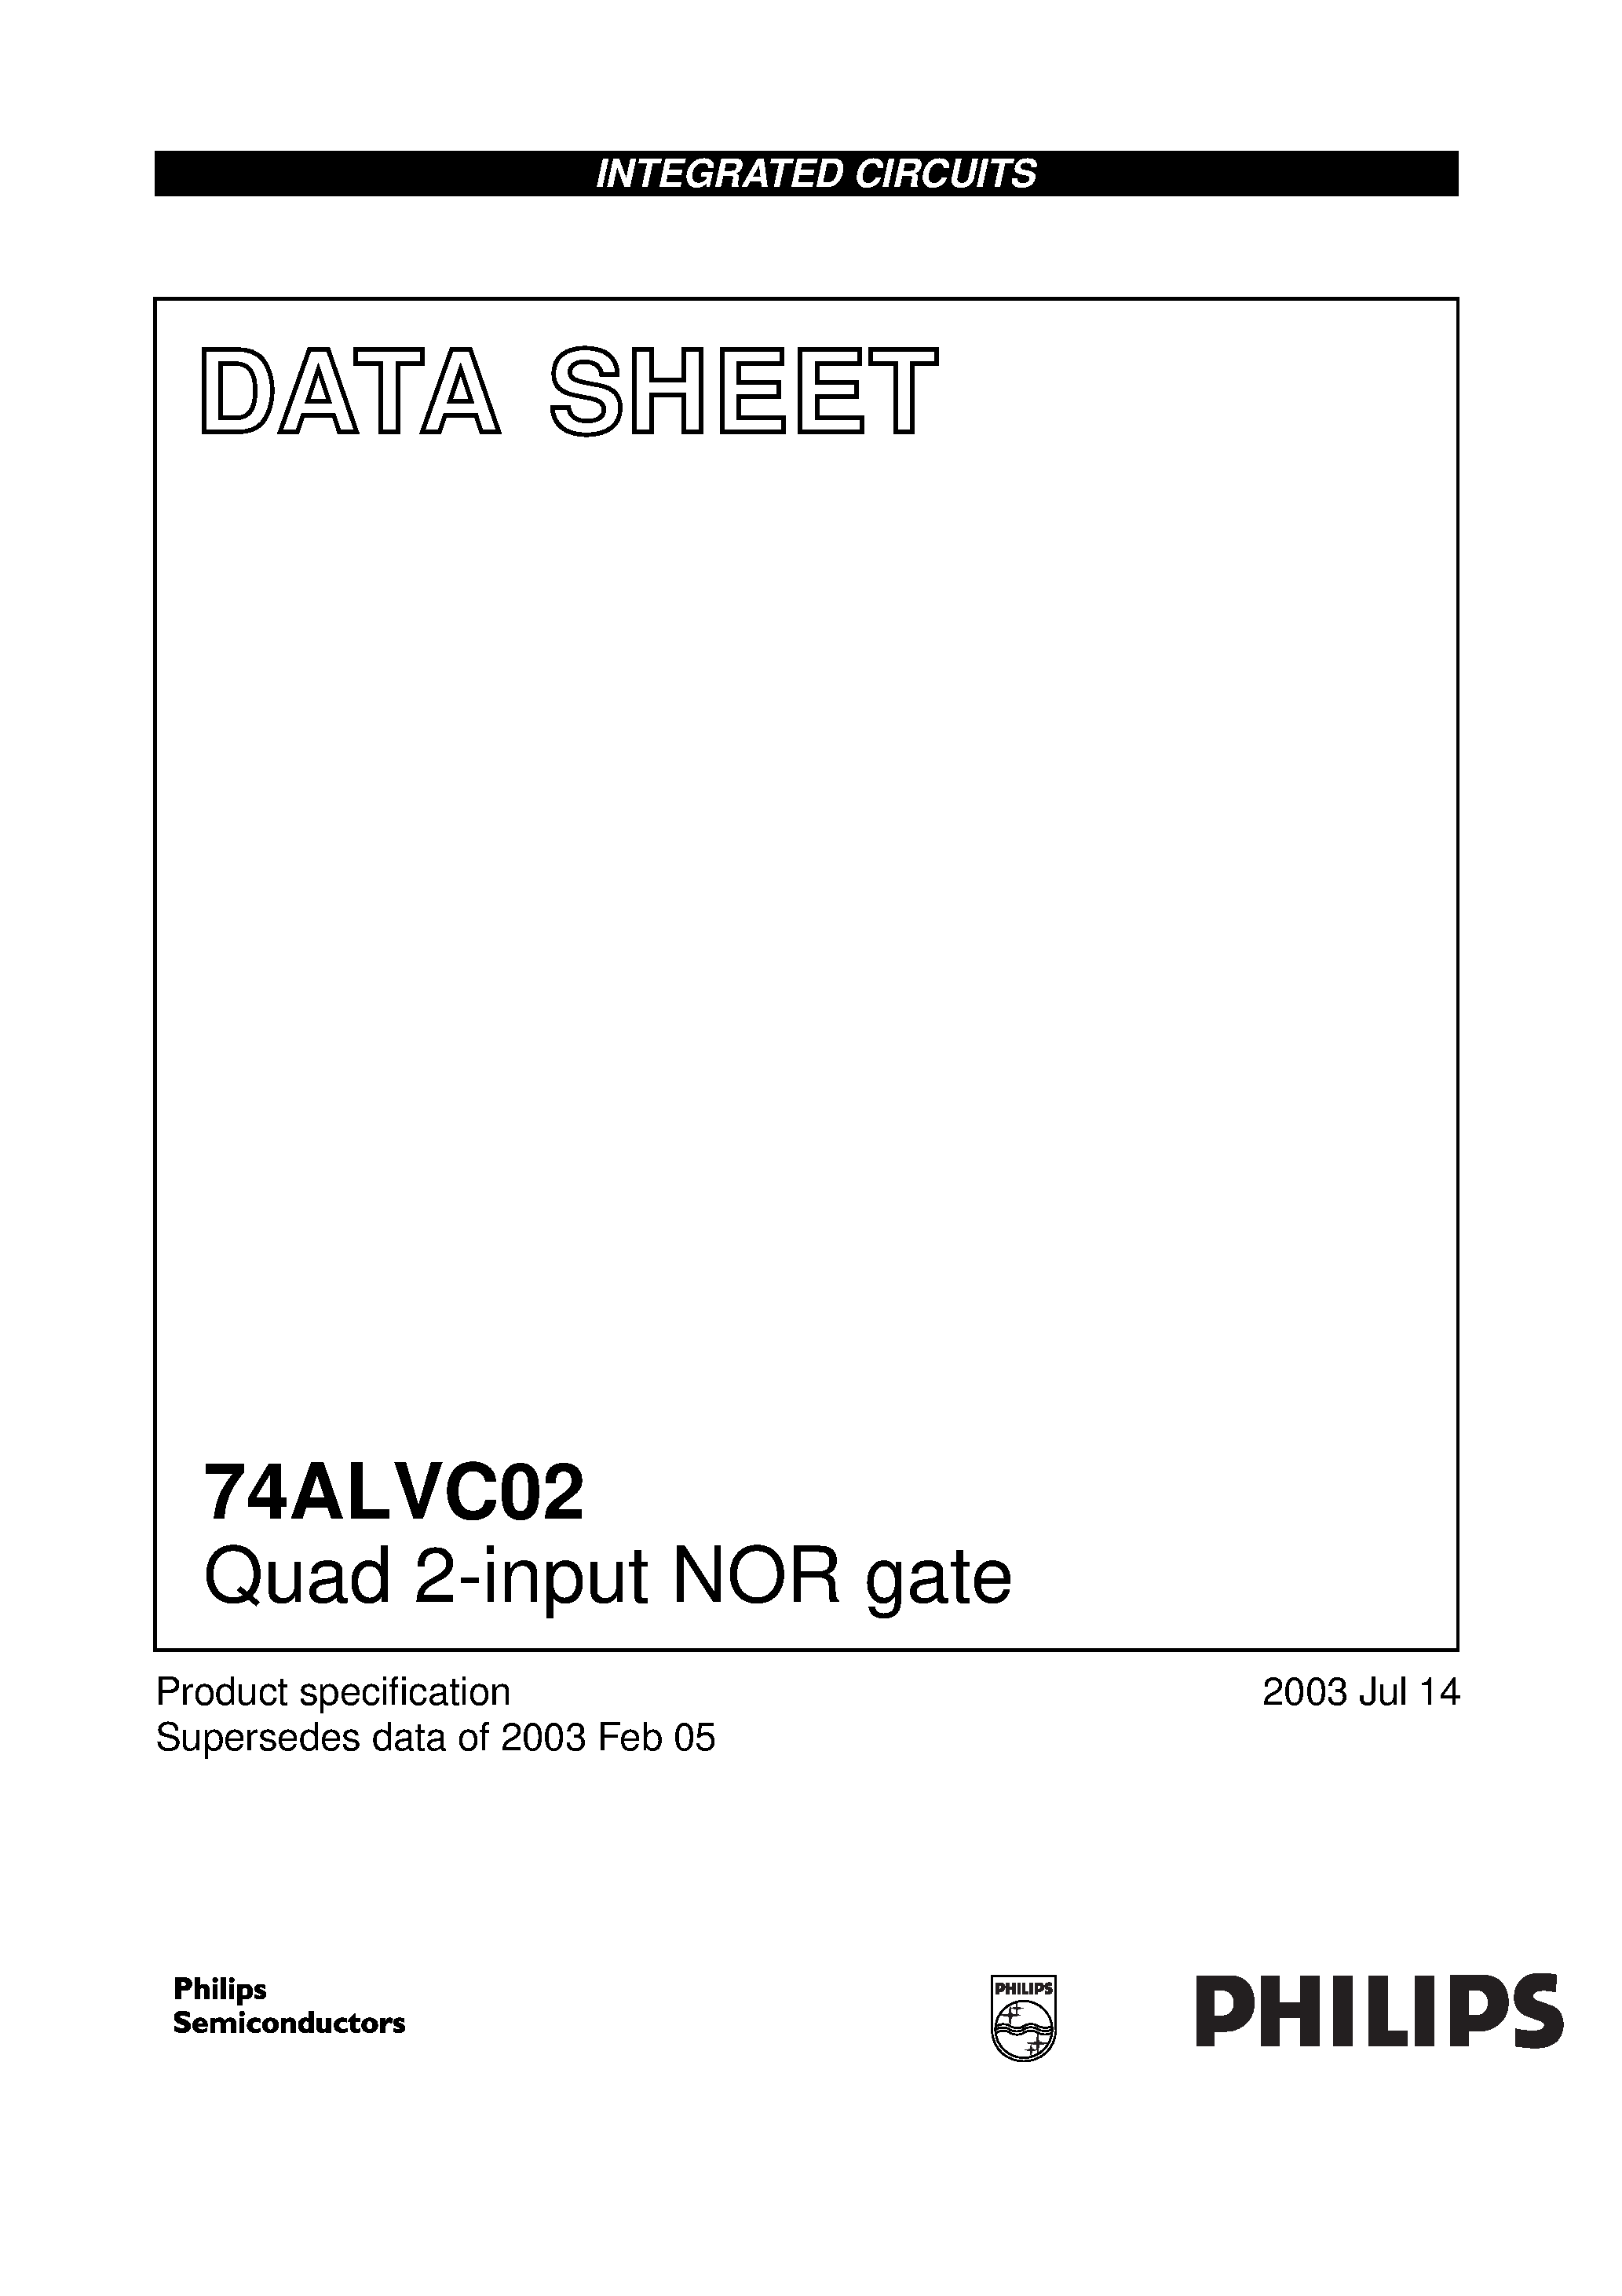 Даташит 74ALVC02D - Quad 2-input NOR gate страница 1